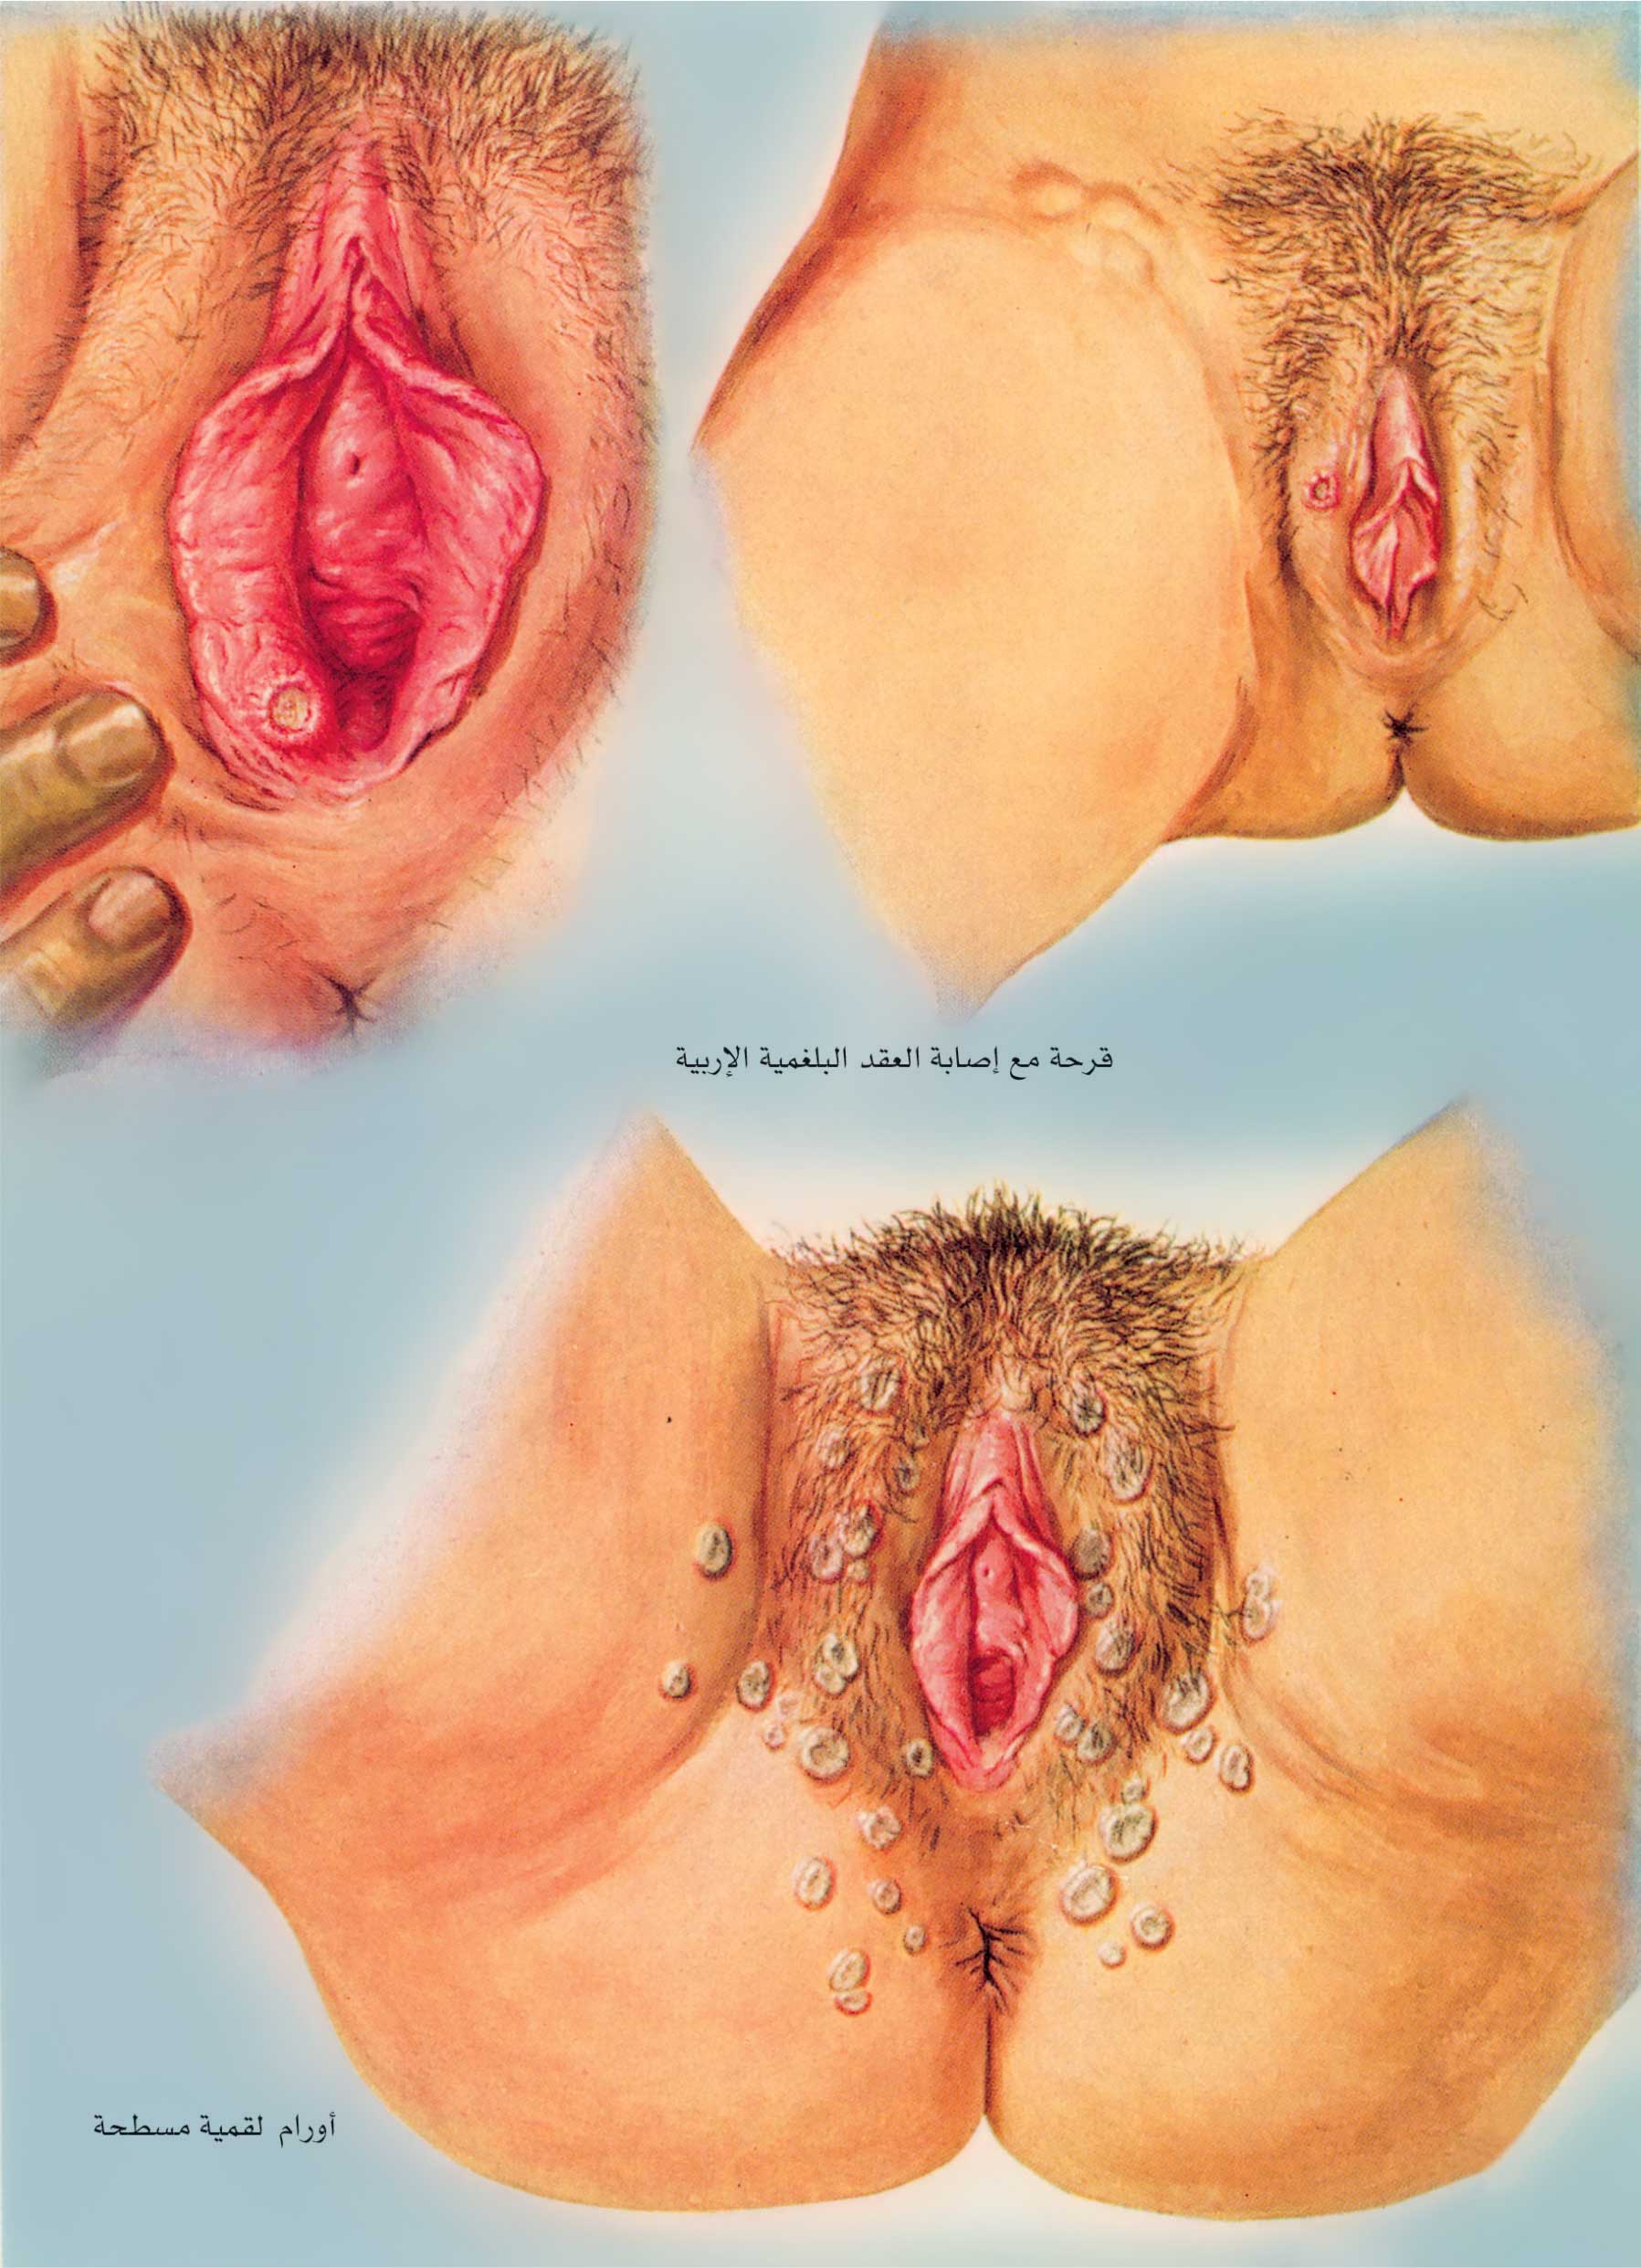 чем можно заразится сифилисом при мастурбации (120) фото